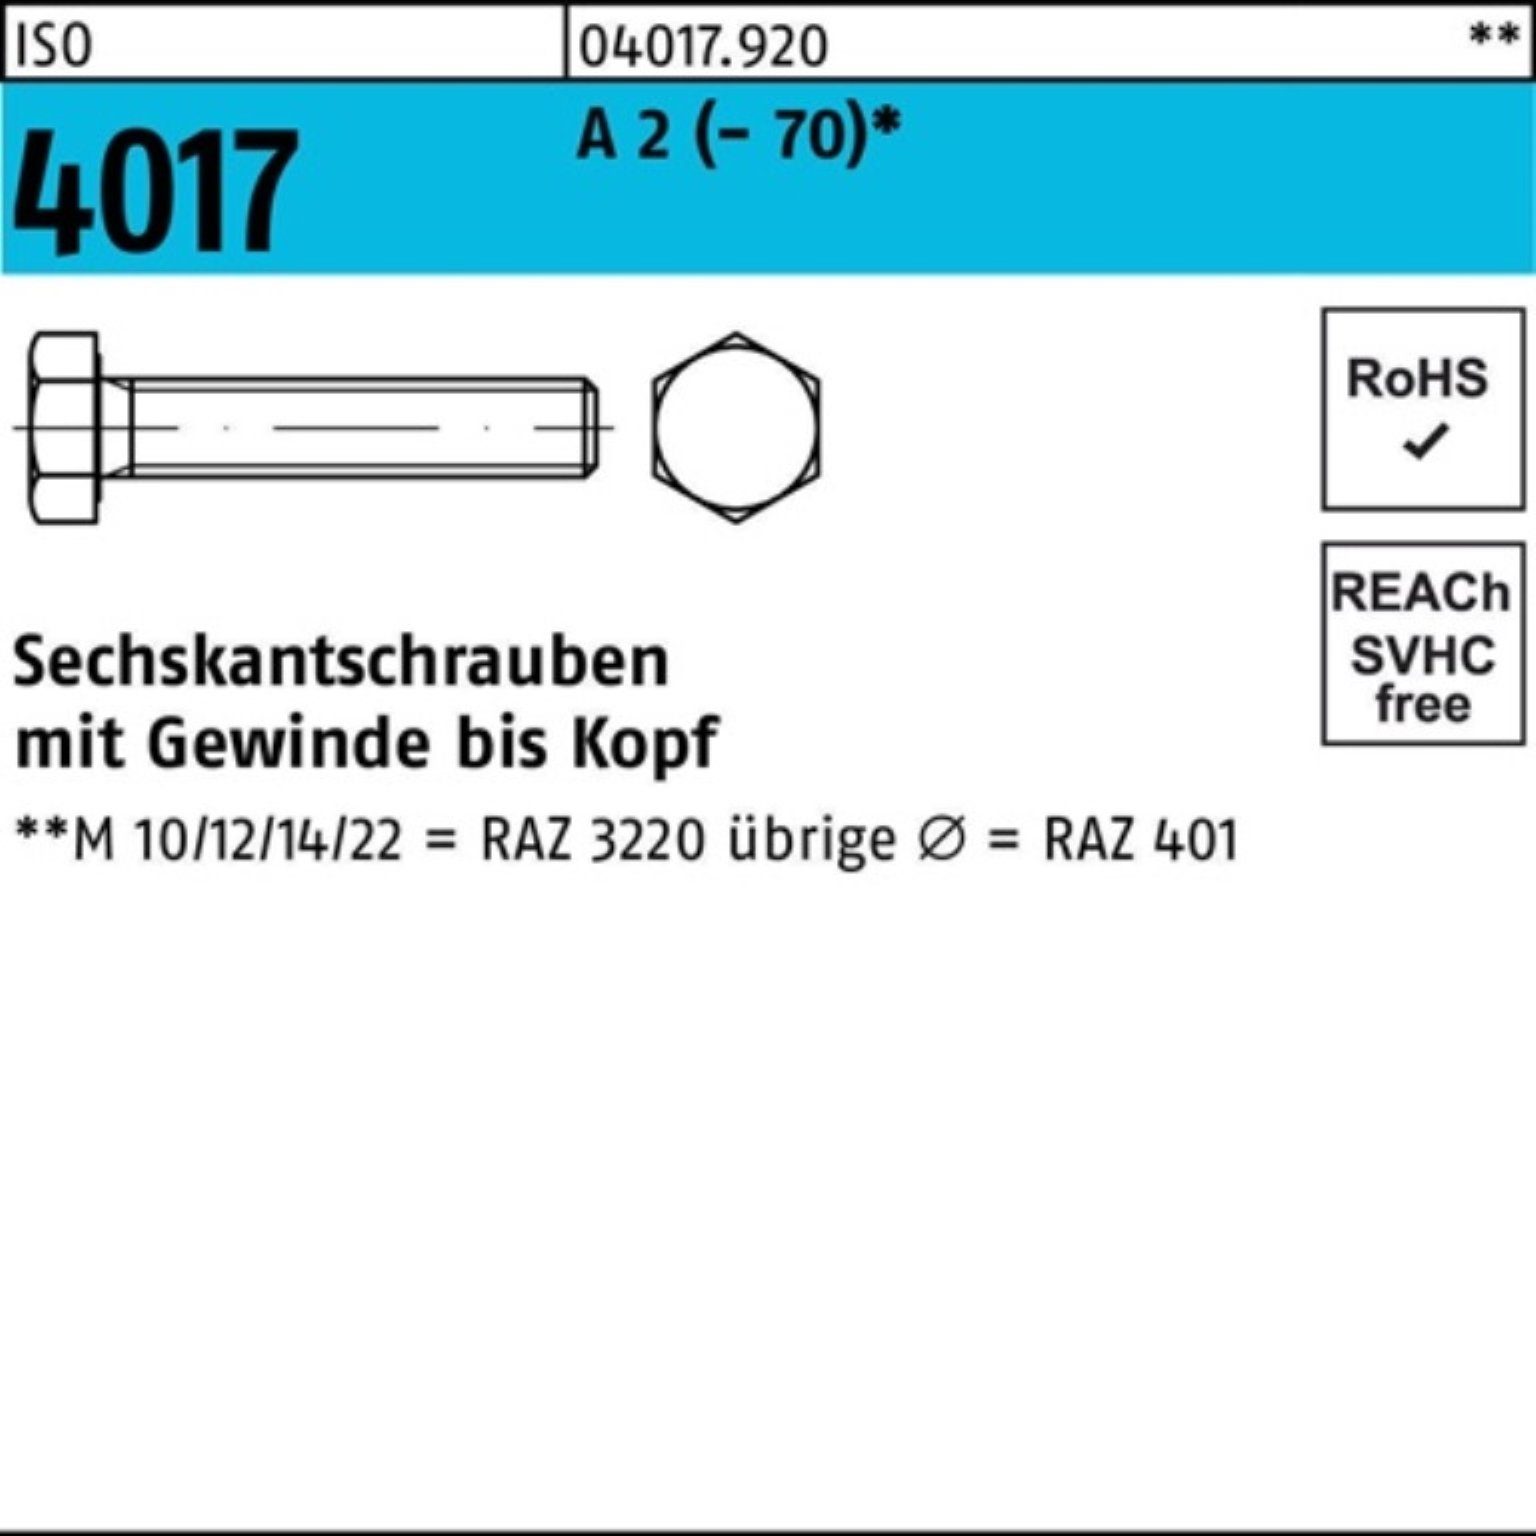 Bufab Sechskantschraube 100er Pack Sechskantschraube Stück 4017 85 25 (70) 2 ISO M20x VG A